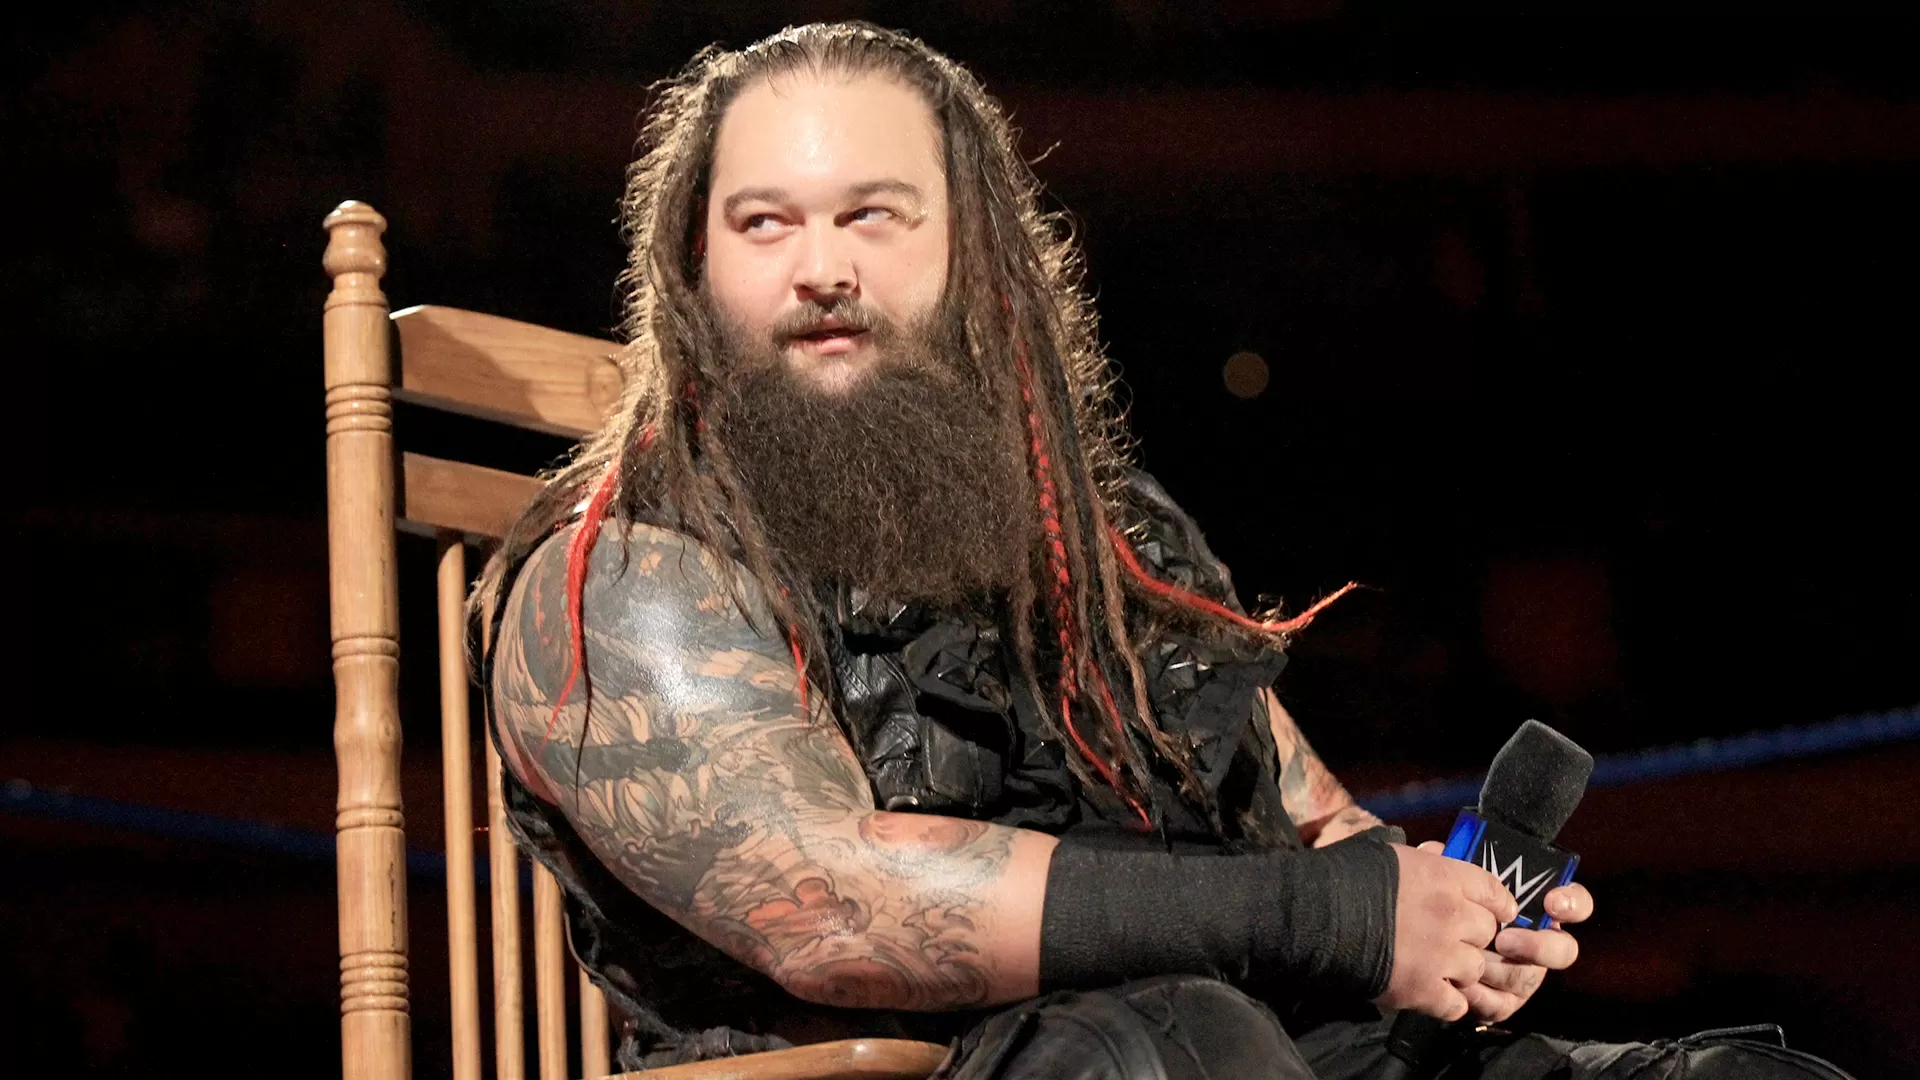 Astro da WWE Bray Wyatt morre aos 36 anos - Nerd Connection